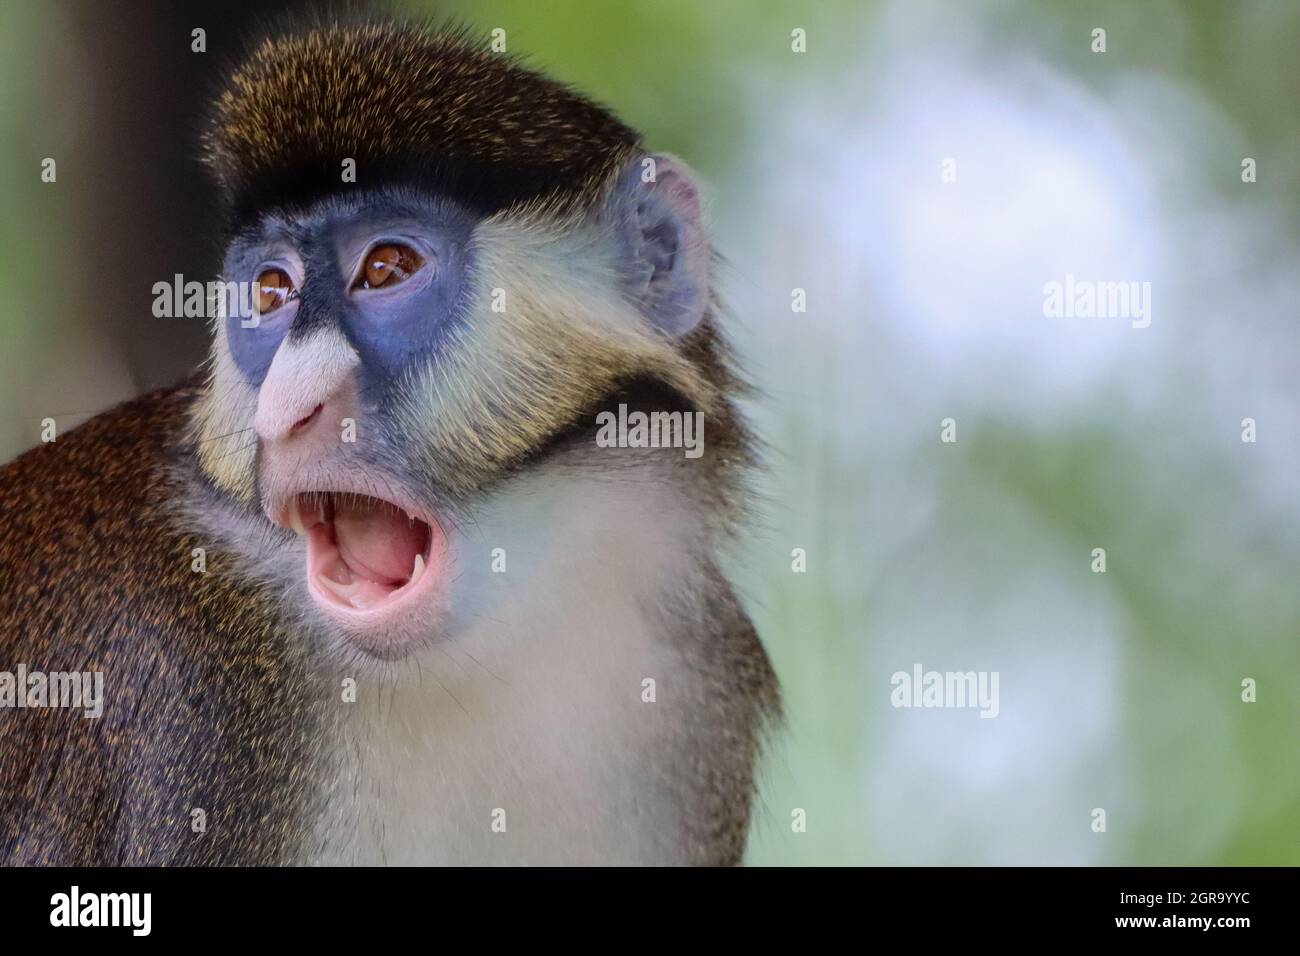 Gueule de singe au Guenon à queue rouge de Schmidt ouverte Photo Stock -  Alamy